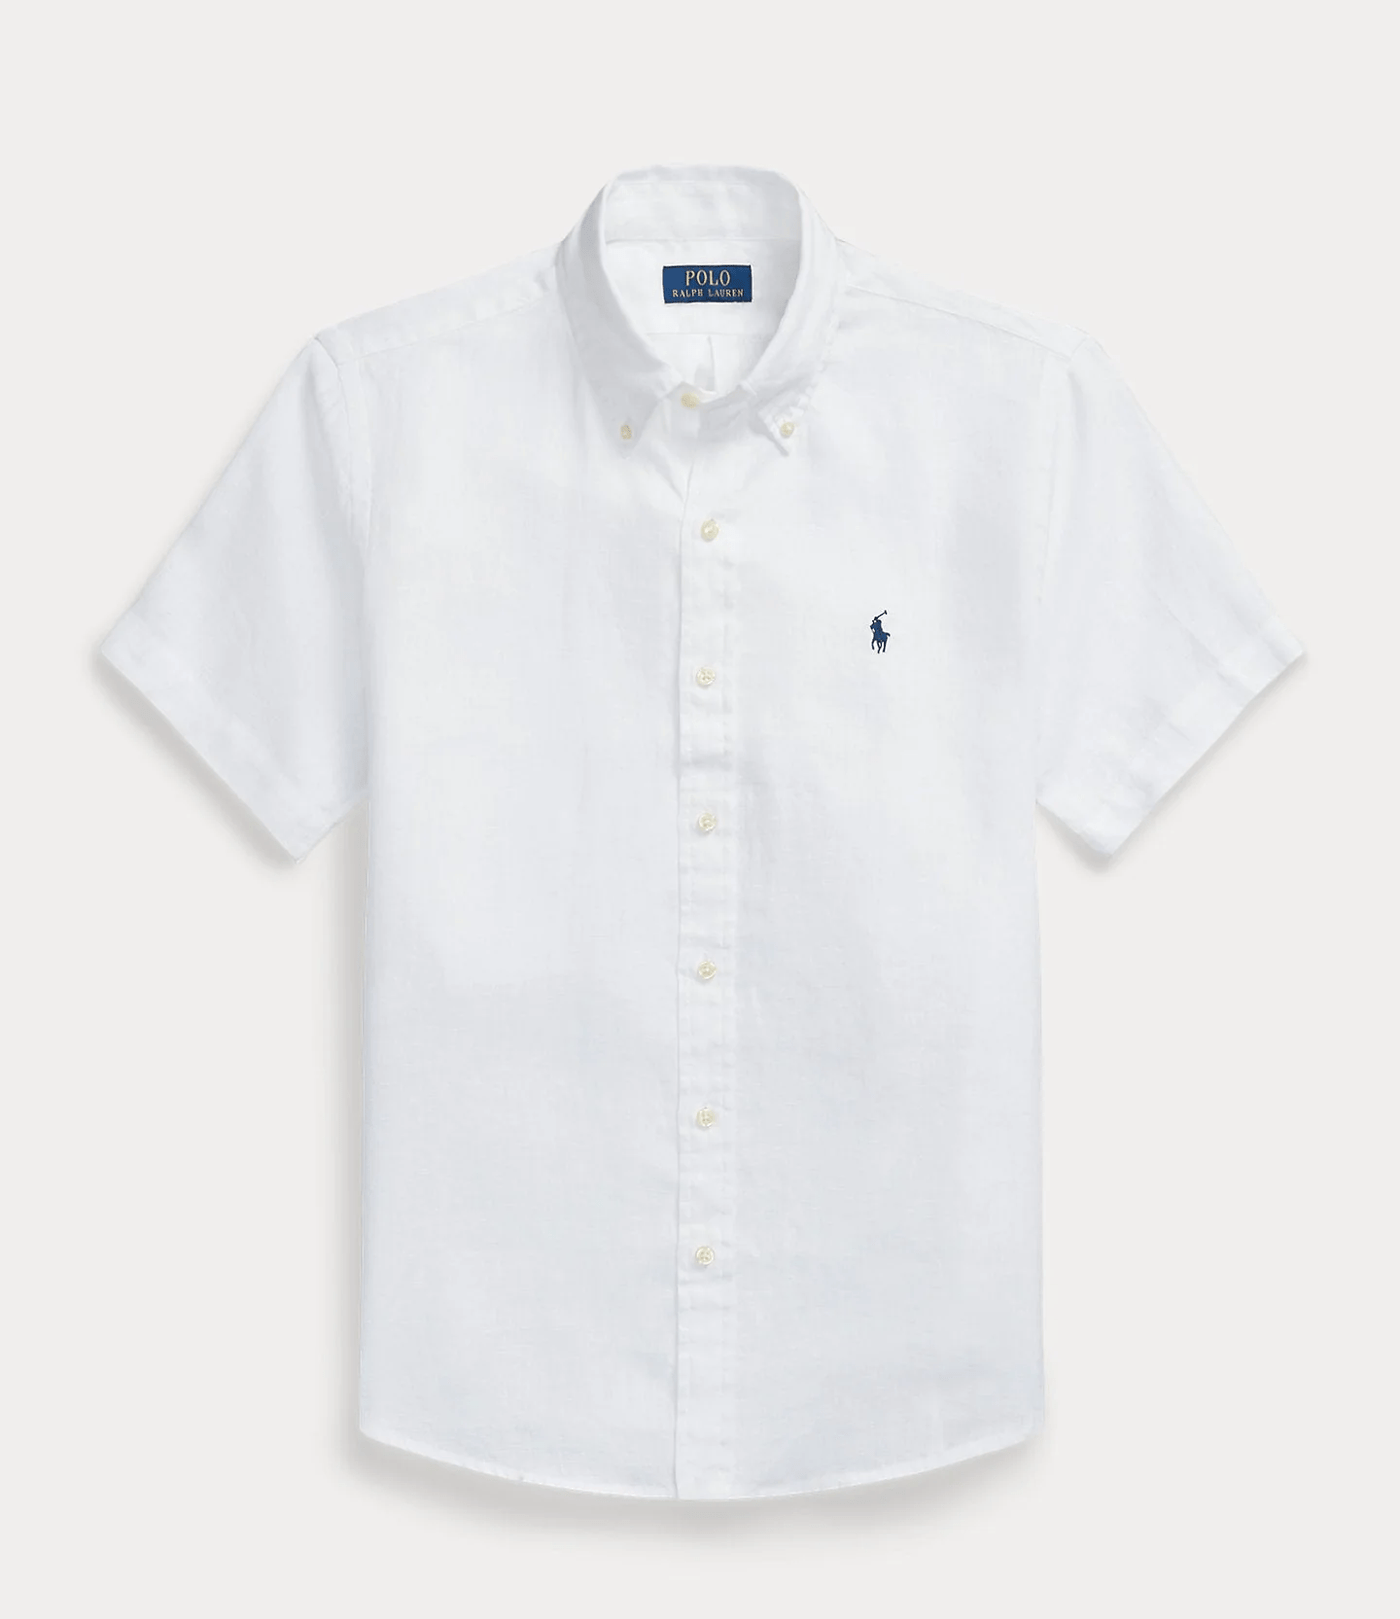 Polo Ralph Lauren - Chemise white ajustée en lin - Lothaire